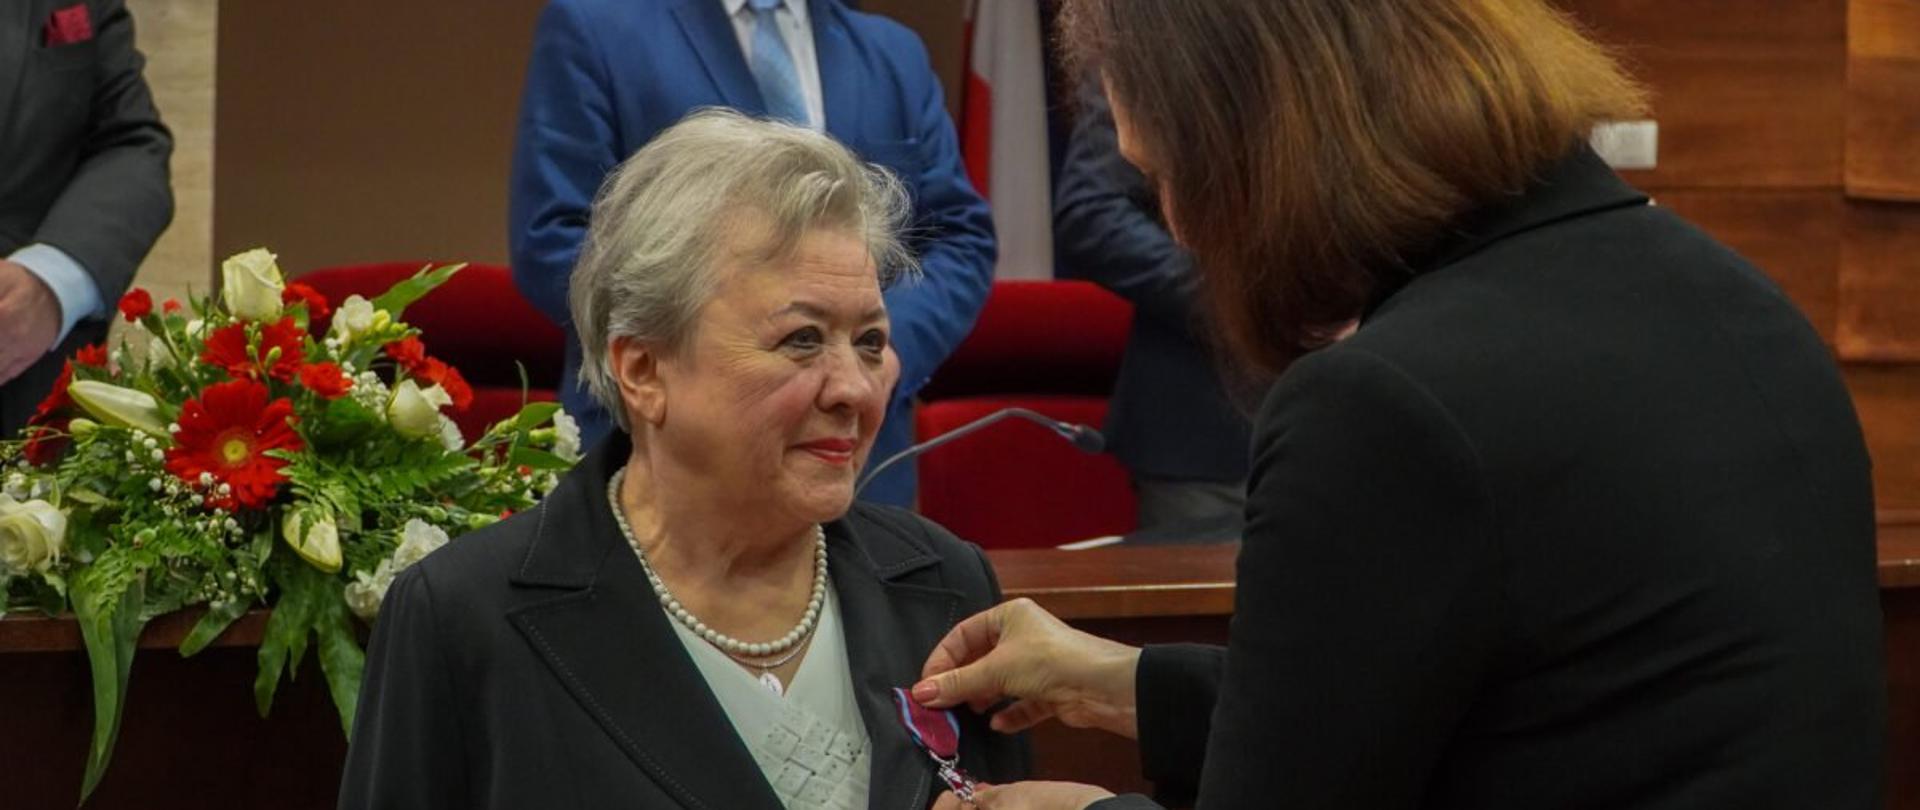 Wojewoda podkarpacki Ewa Leniart wręcza odznaczenie państwowe podczas sesji Sejmiku Województwa Podkarpackiego 